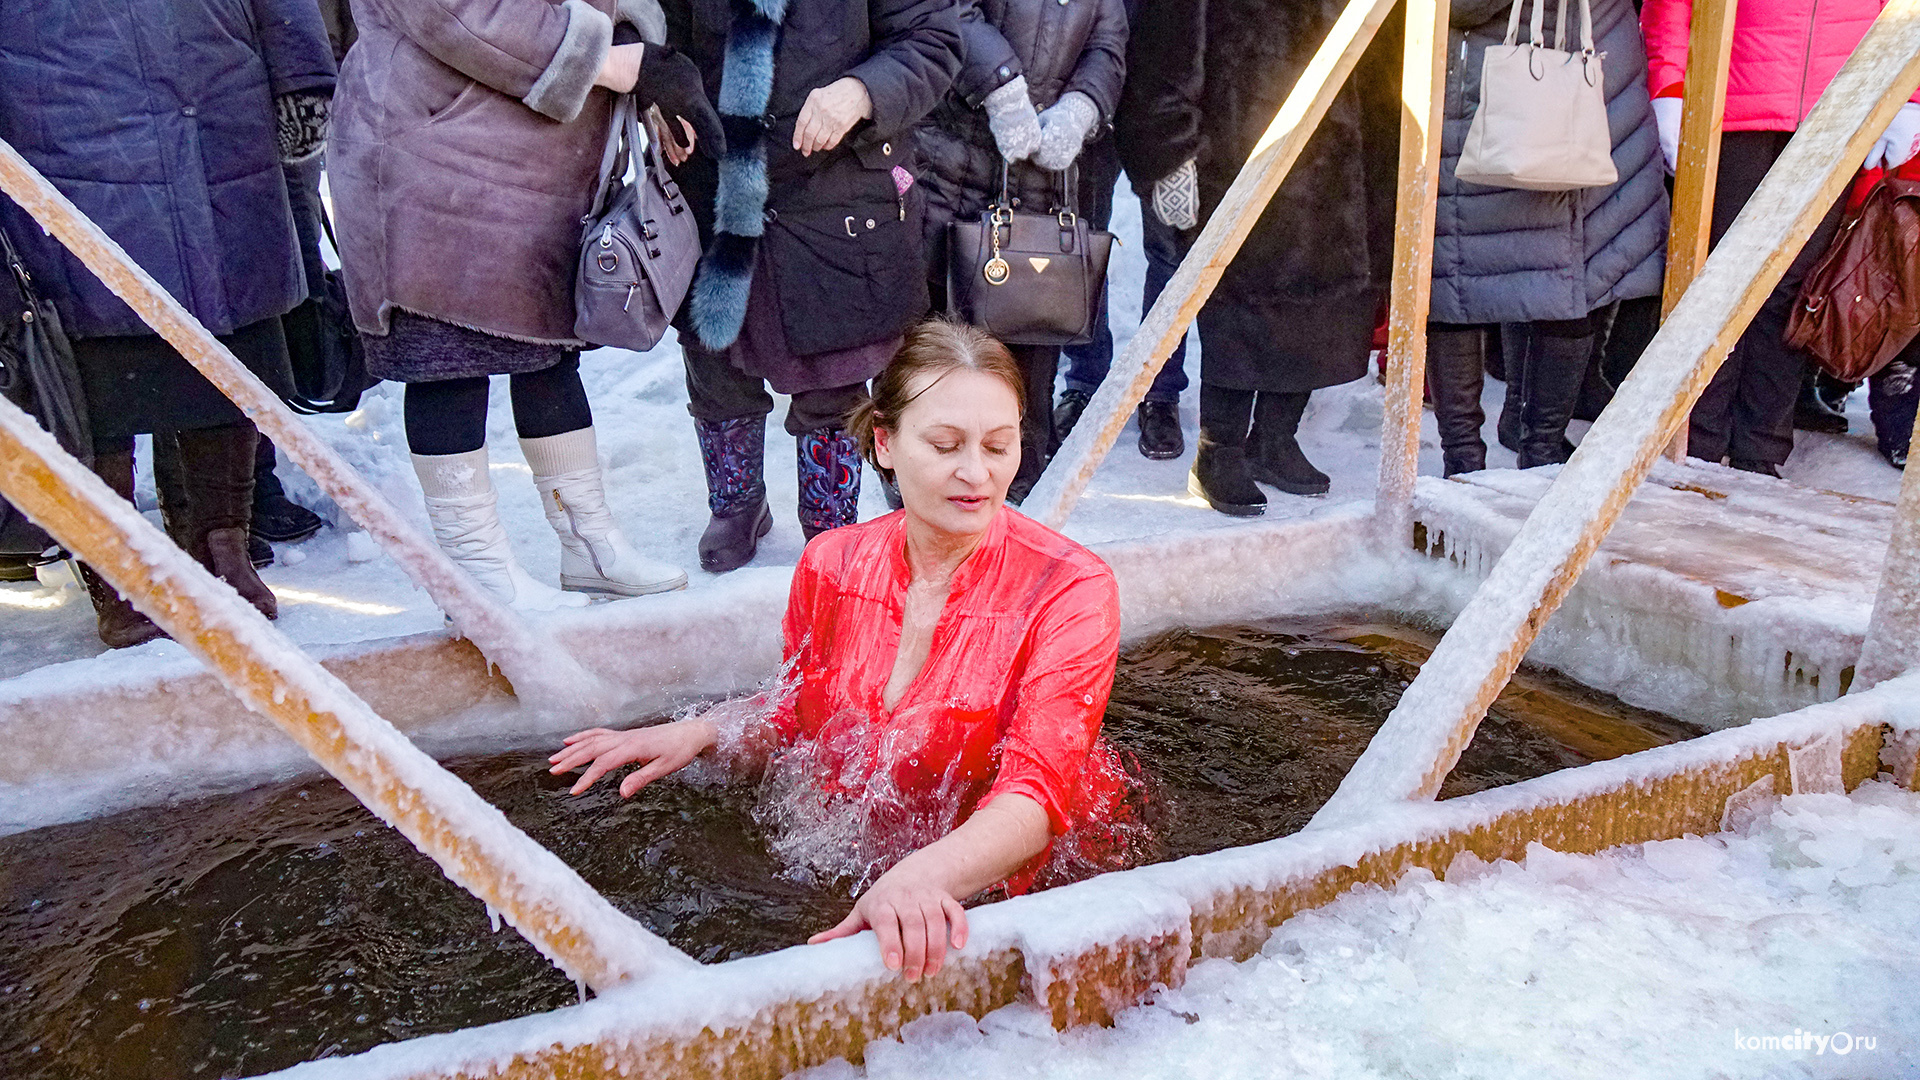 Битломания, крещение и футбол на снегу: Анонс мероприятий в Комсомольске-на-Амуре на субботу и воскресенье, 18 и 19 января